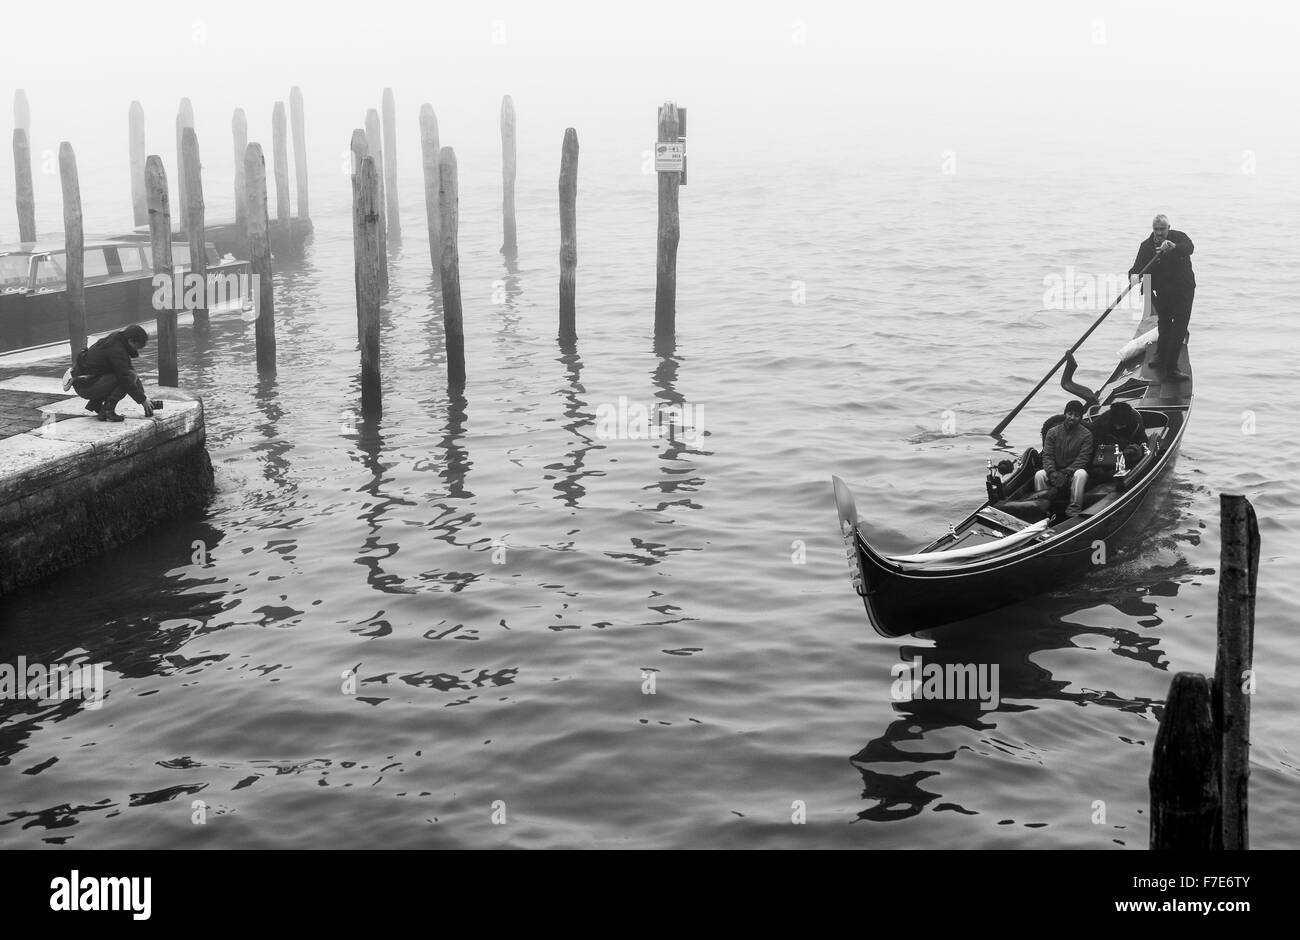 Italy, Venice, tourists in gondola near Riva Degli Schiavoni in a foggy day Stock Photo